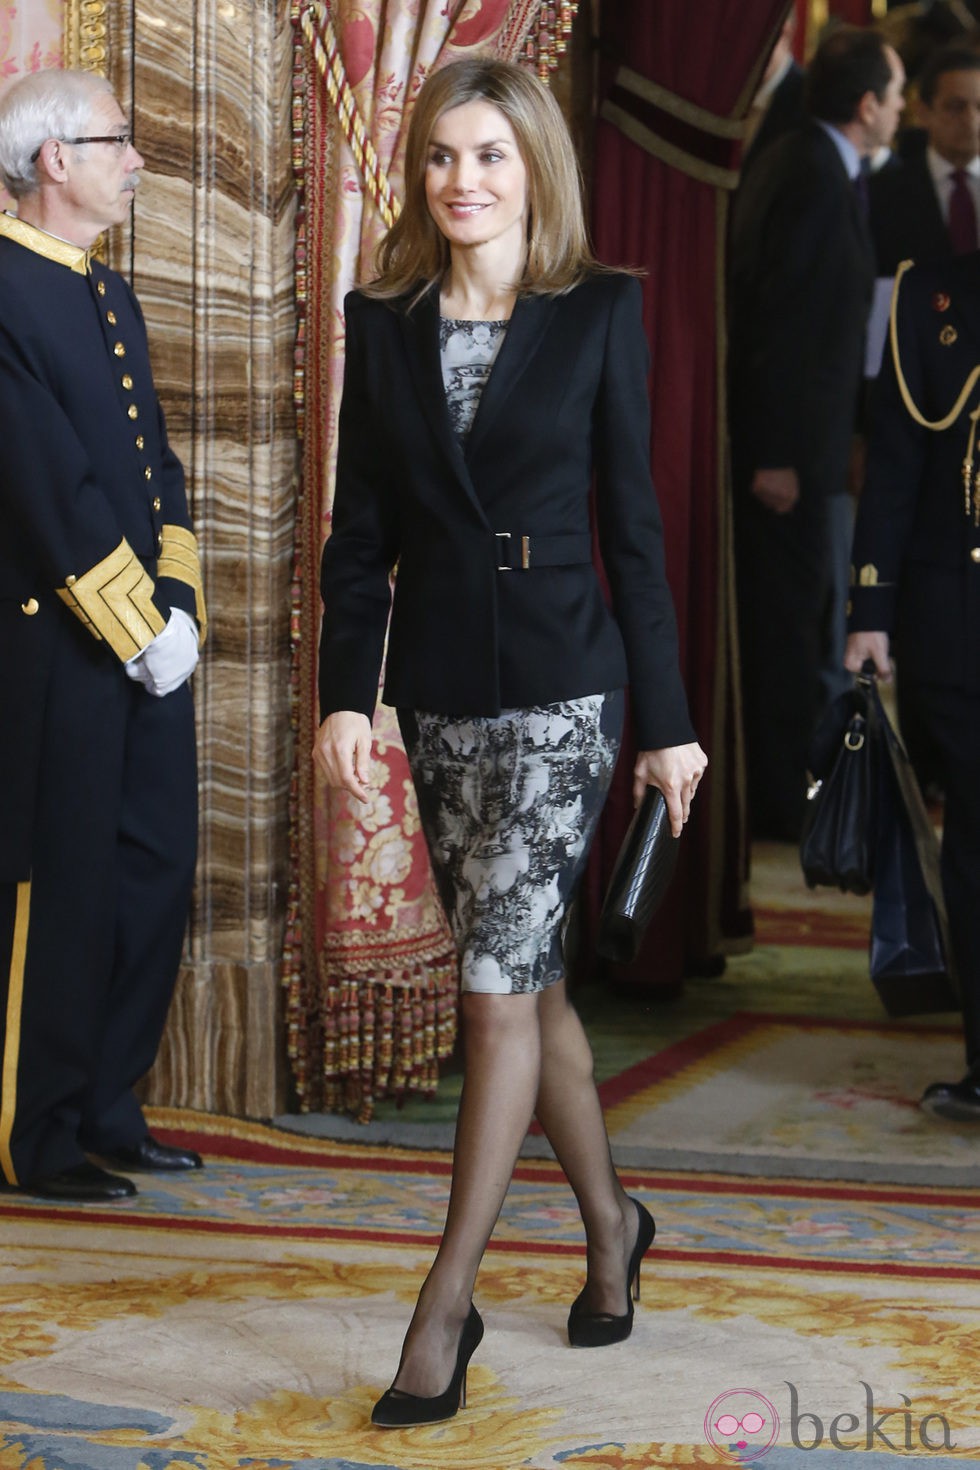 La Reina Letizia lució su nuevo look vistiendo un modelo estampado de Hugo Boss